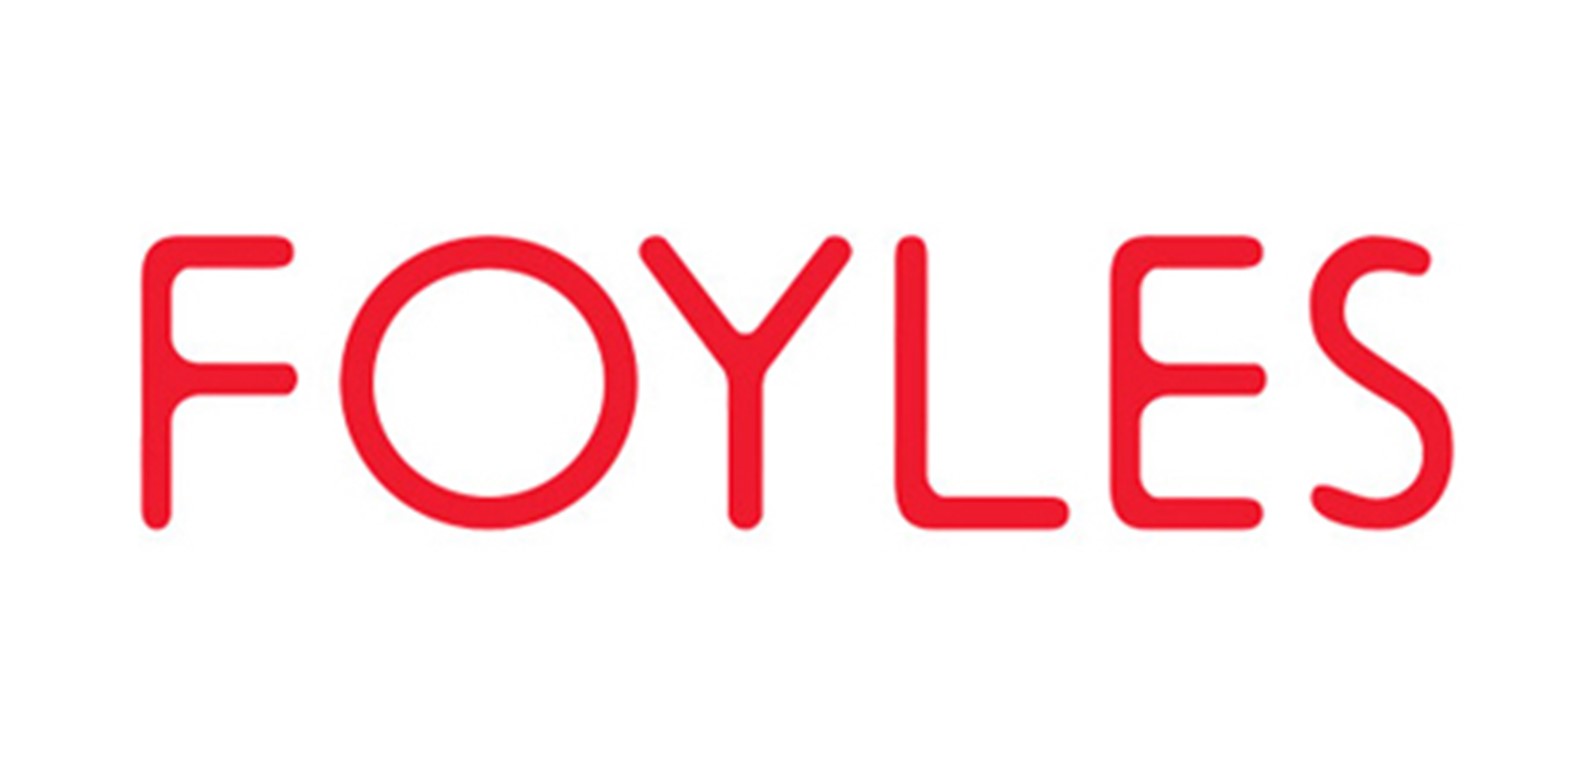 Foyles (W G Foyle Ltd) London Royal Festival Hall